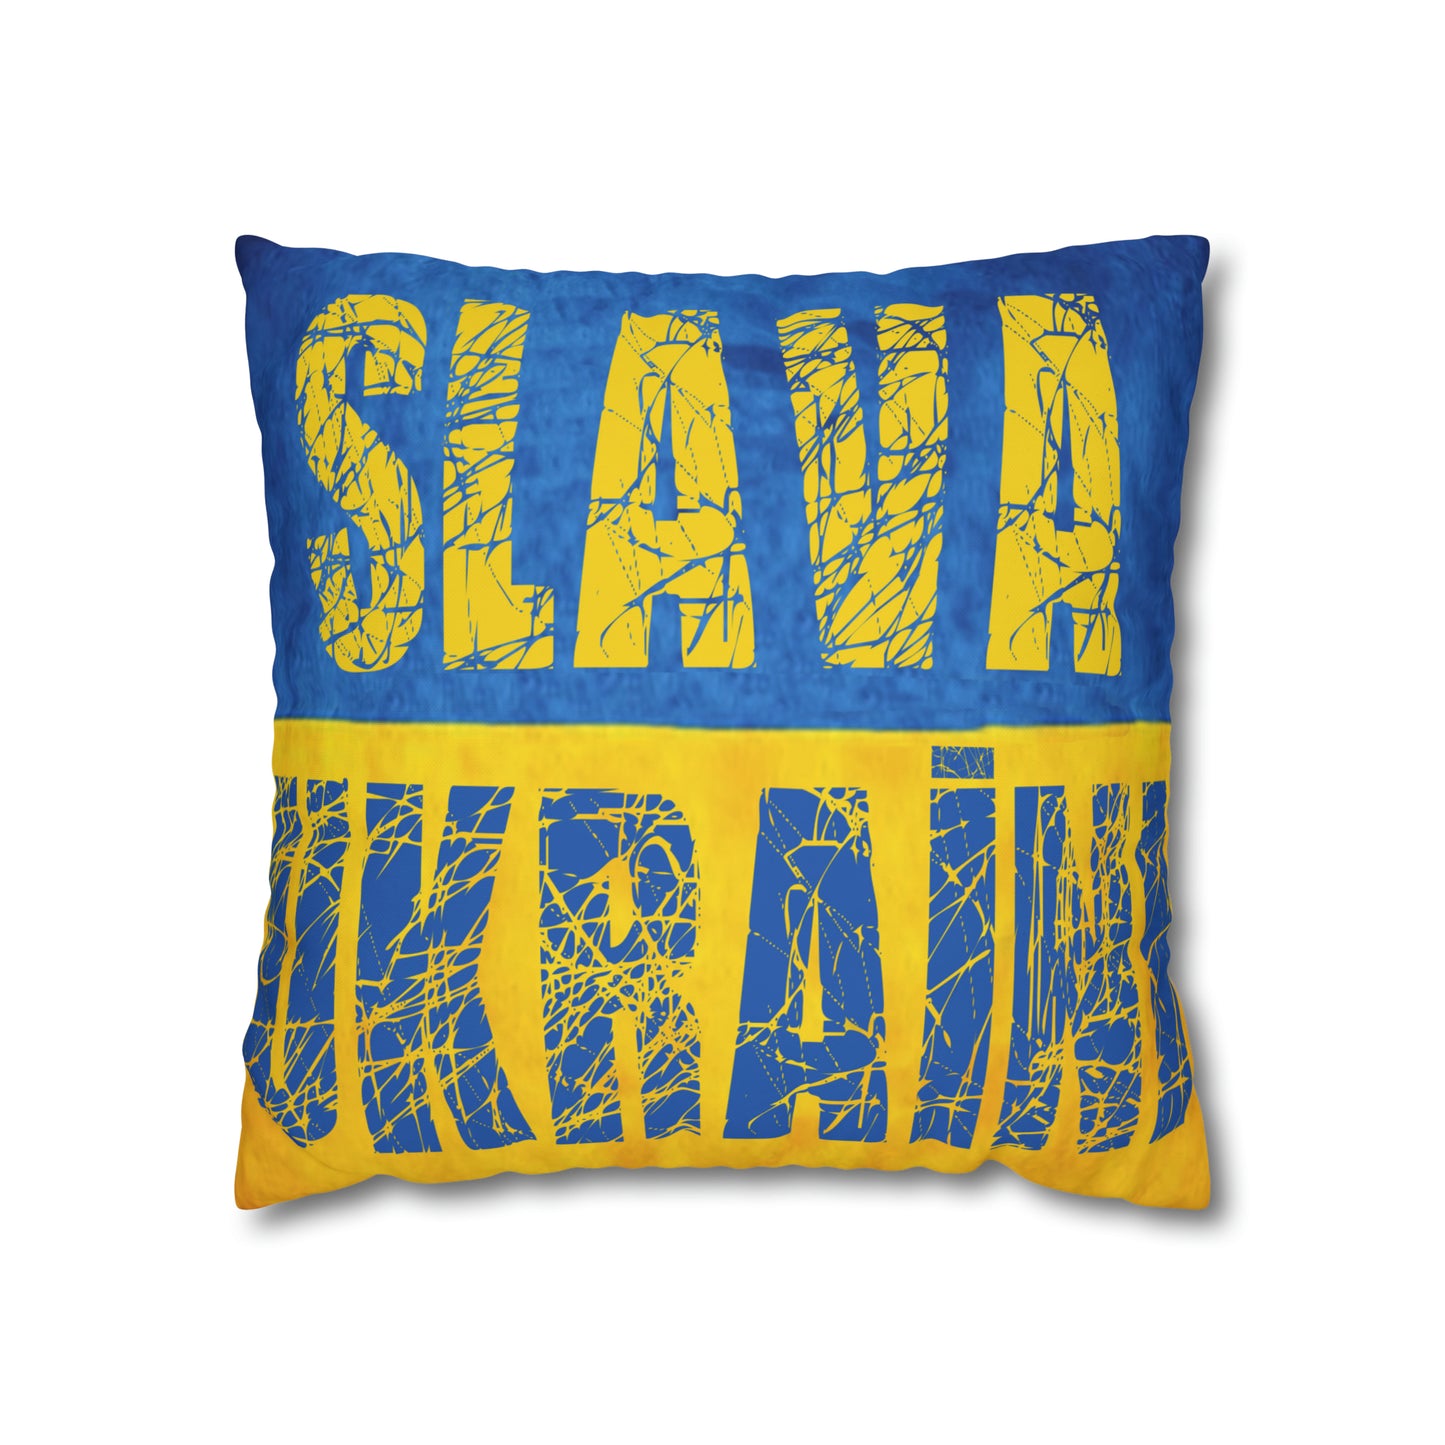 SLAVA UKRAINI & TRIDENT FLAG - Spun Polyester Pillowcase